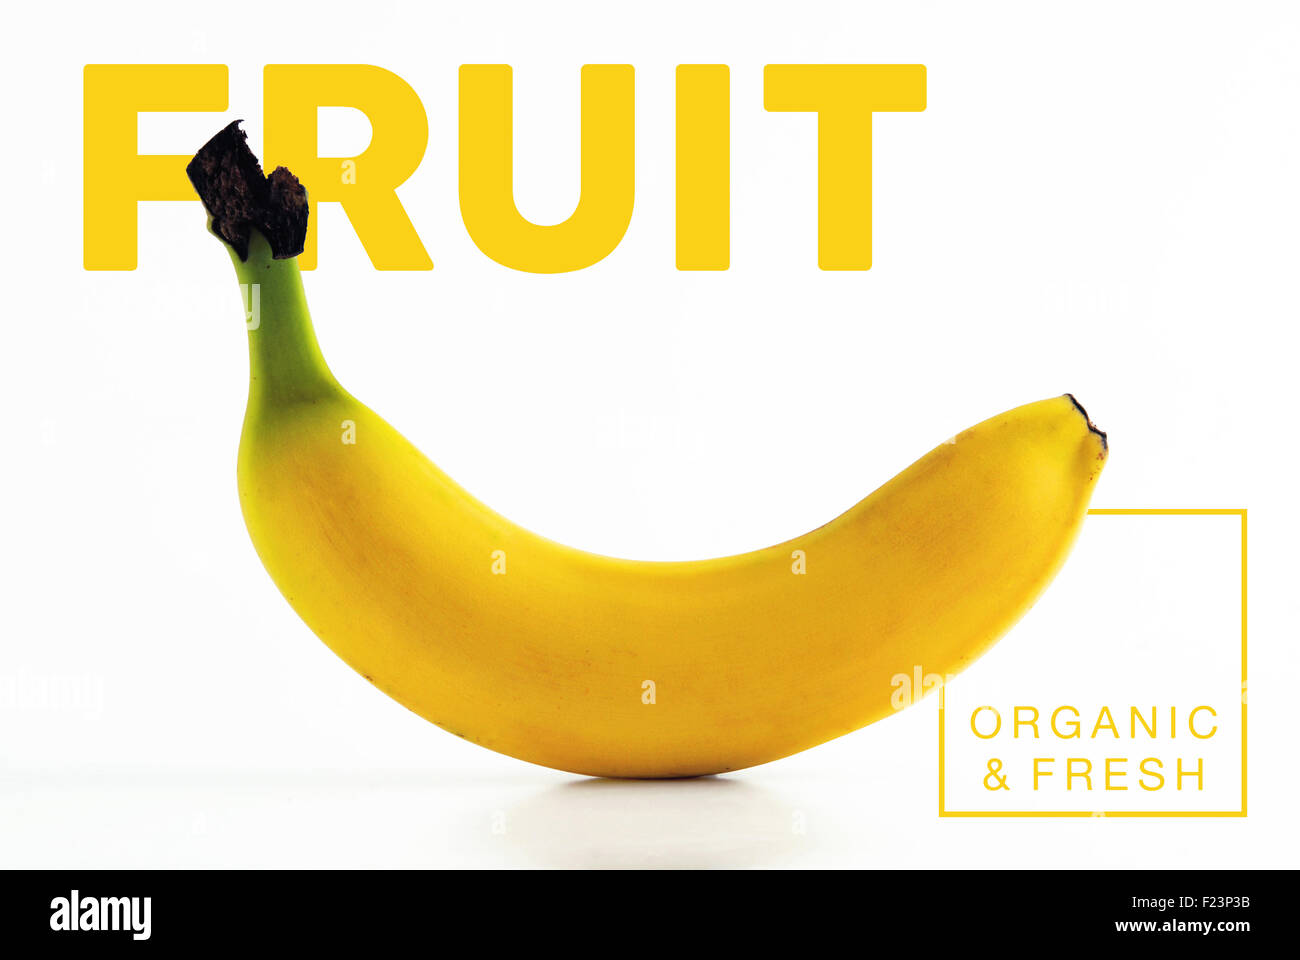 Frisch und Bio-Bananen Obst isoliert Hintergrund ideal für gesunde Ernährung Konzept Plakat oder Cover Design. Stockfoto